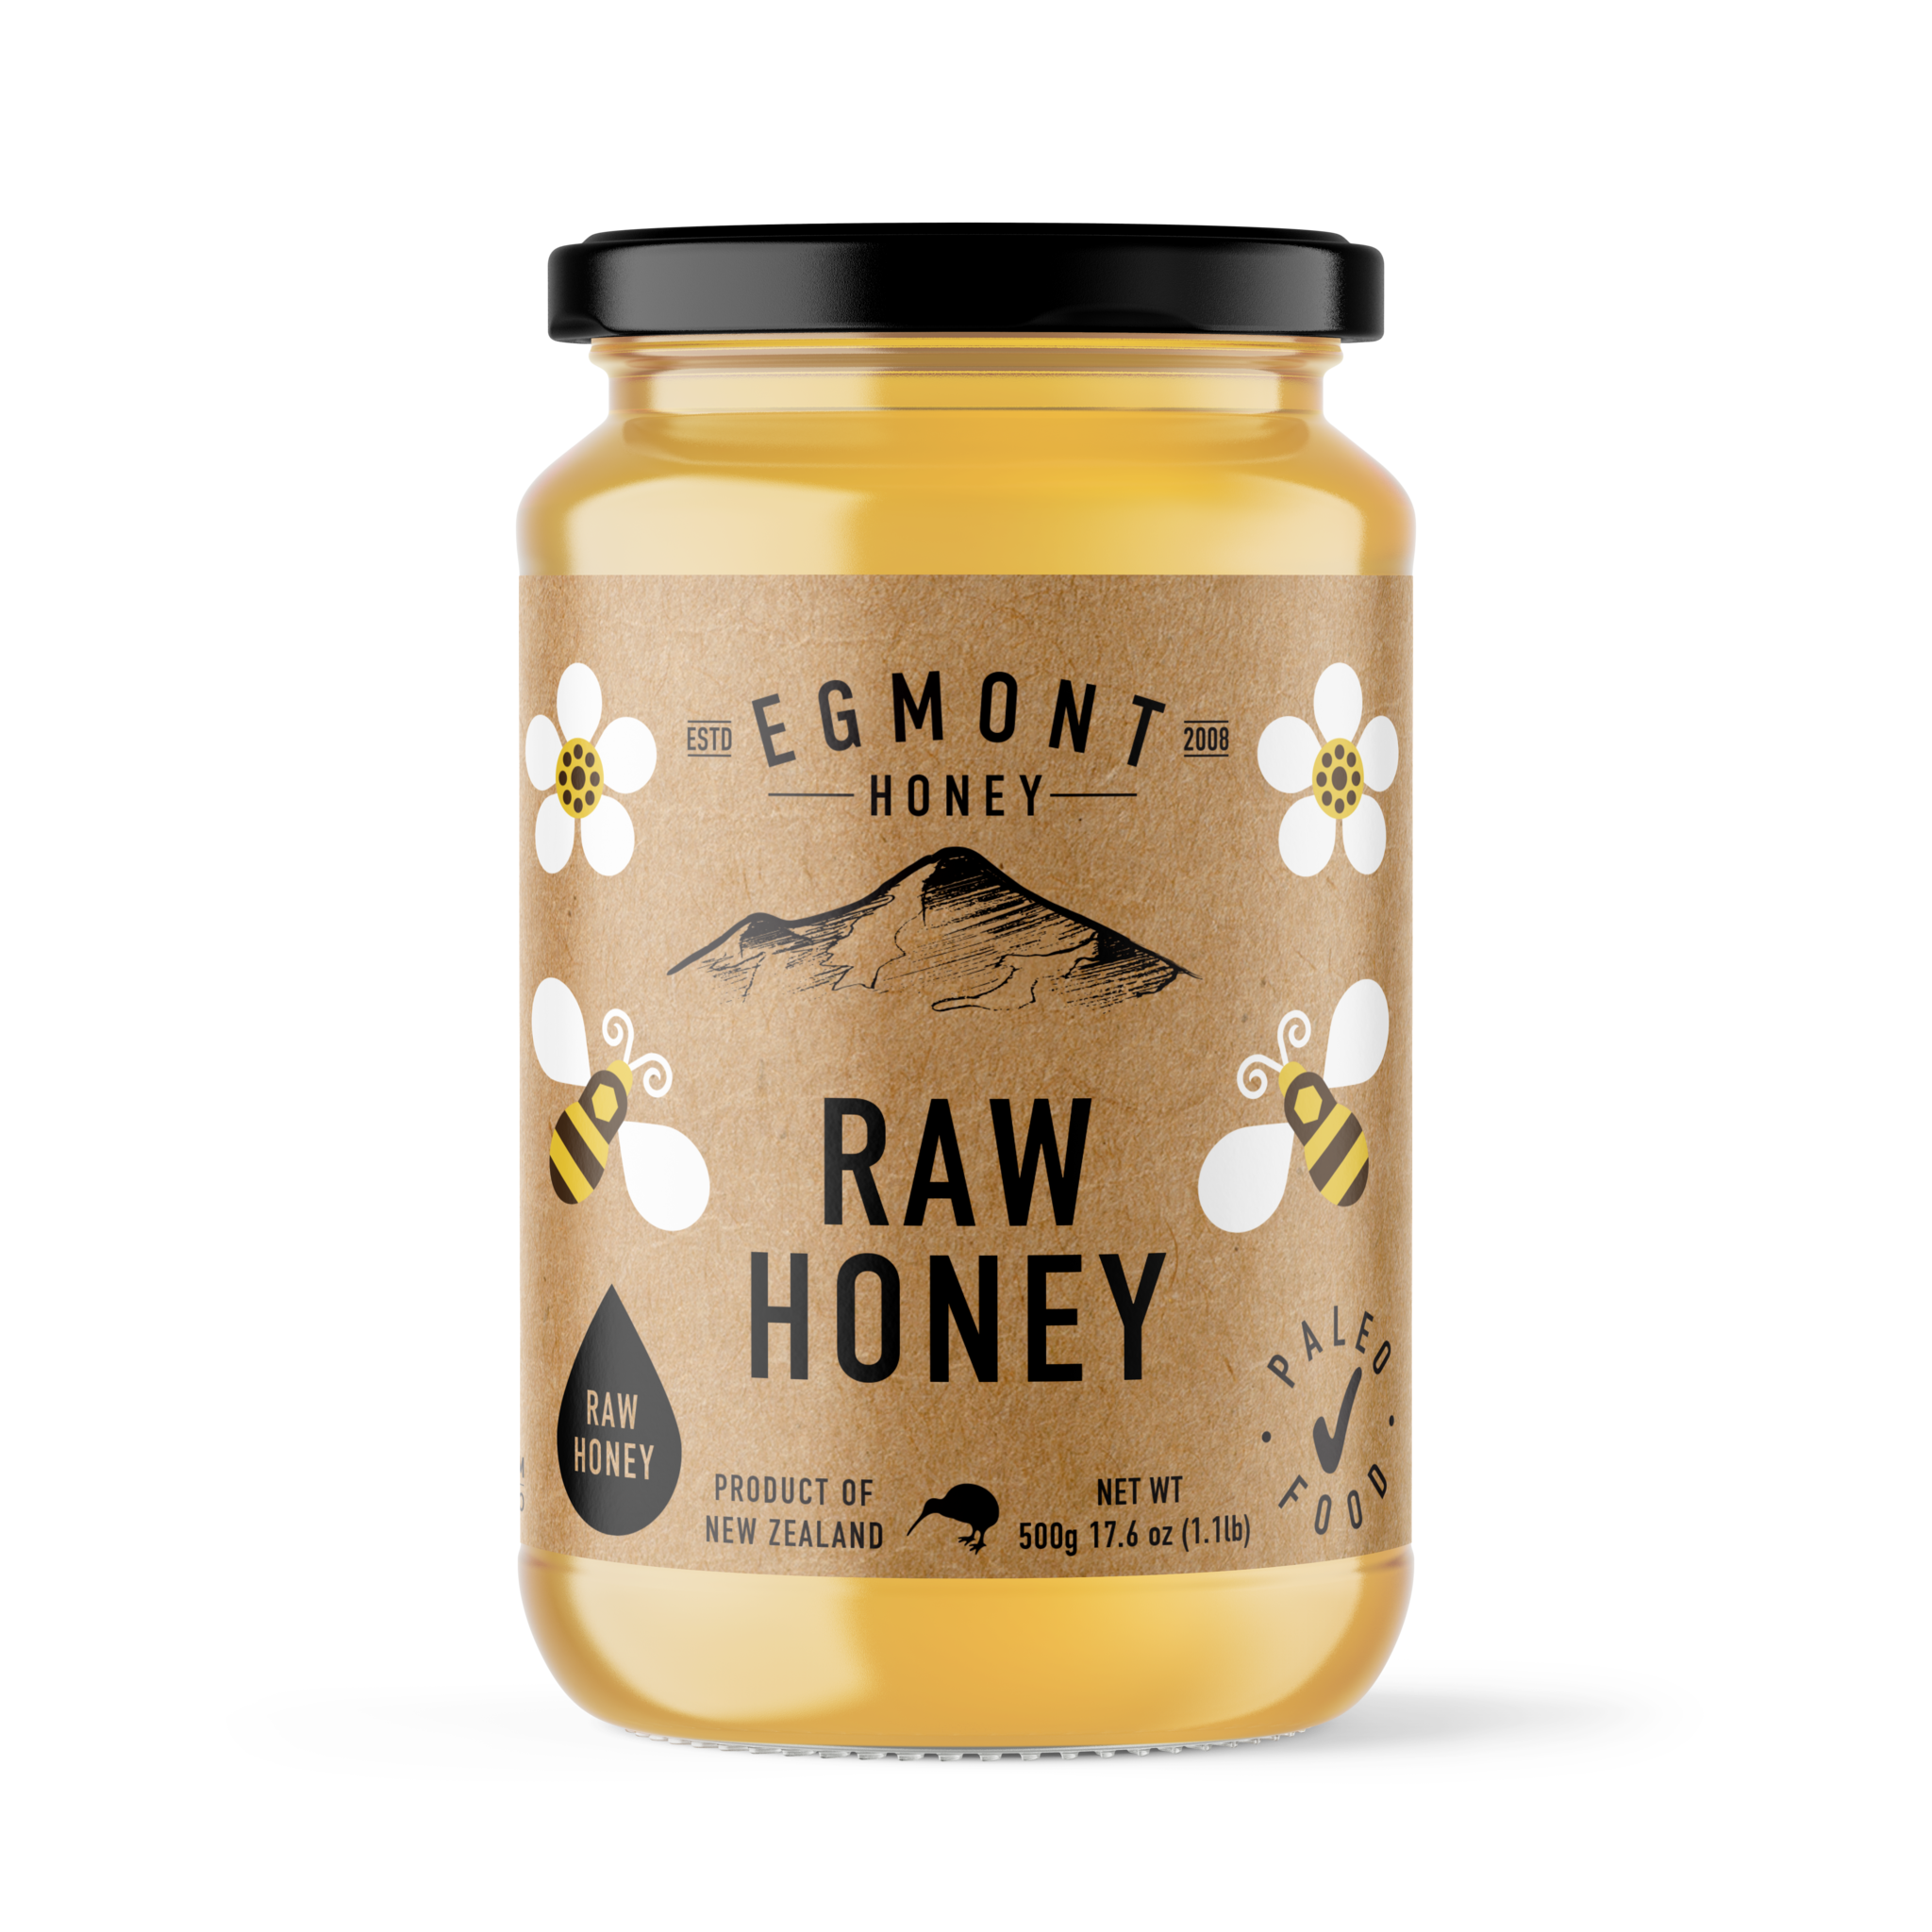 Egmont Honey Raw Honey Glass Jar 500g 1